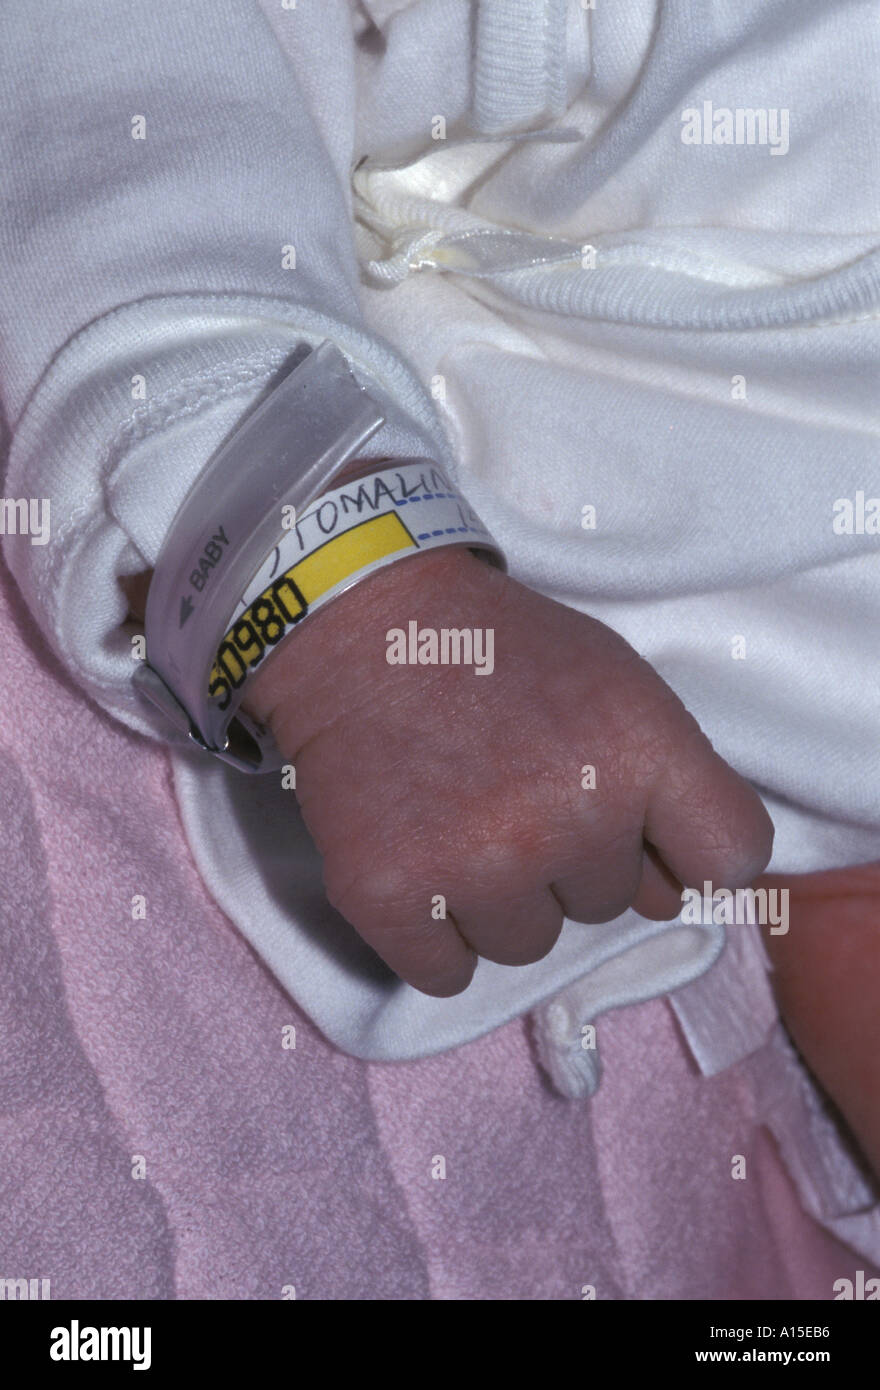 Brazalete de identificación del recién nacido MEDIAL Fotografía de stock -  Alamy